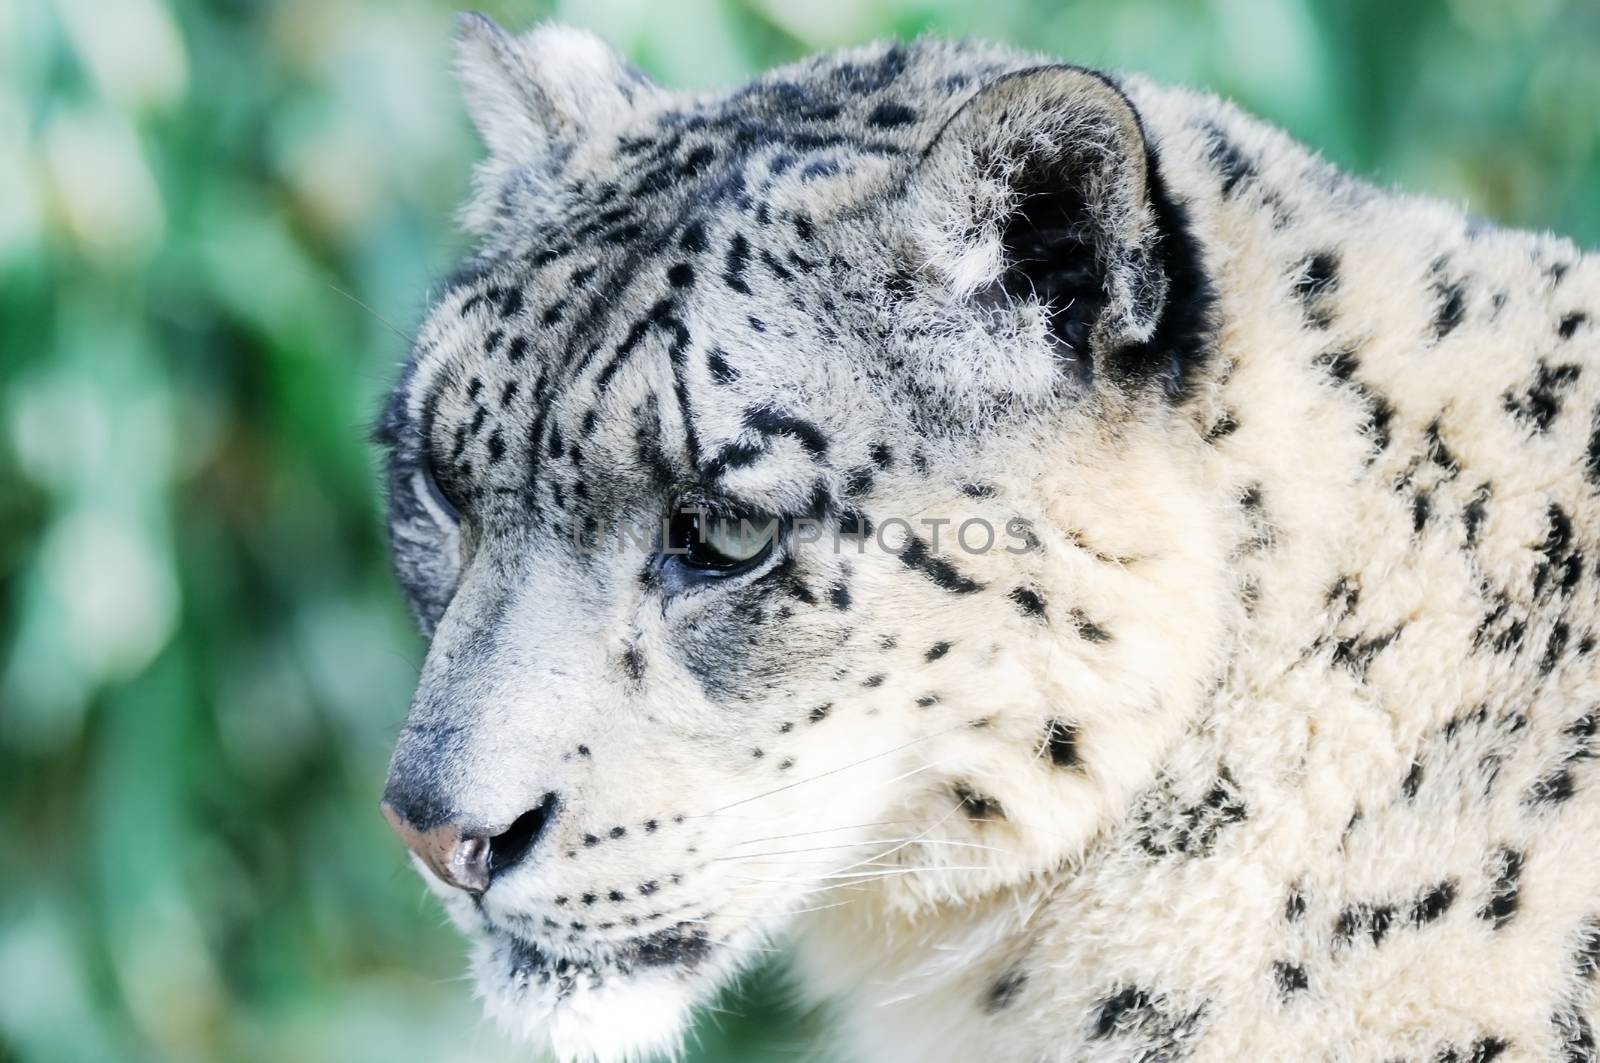 Closeup detail of snow leopard face